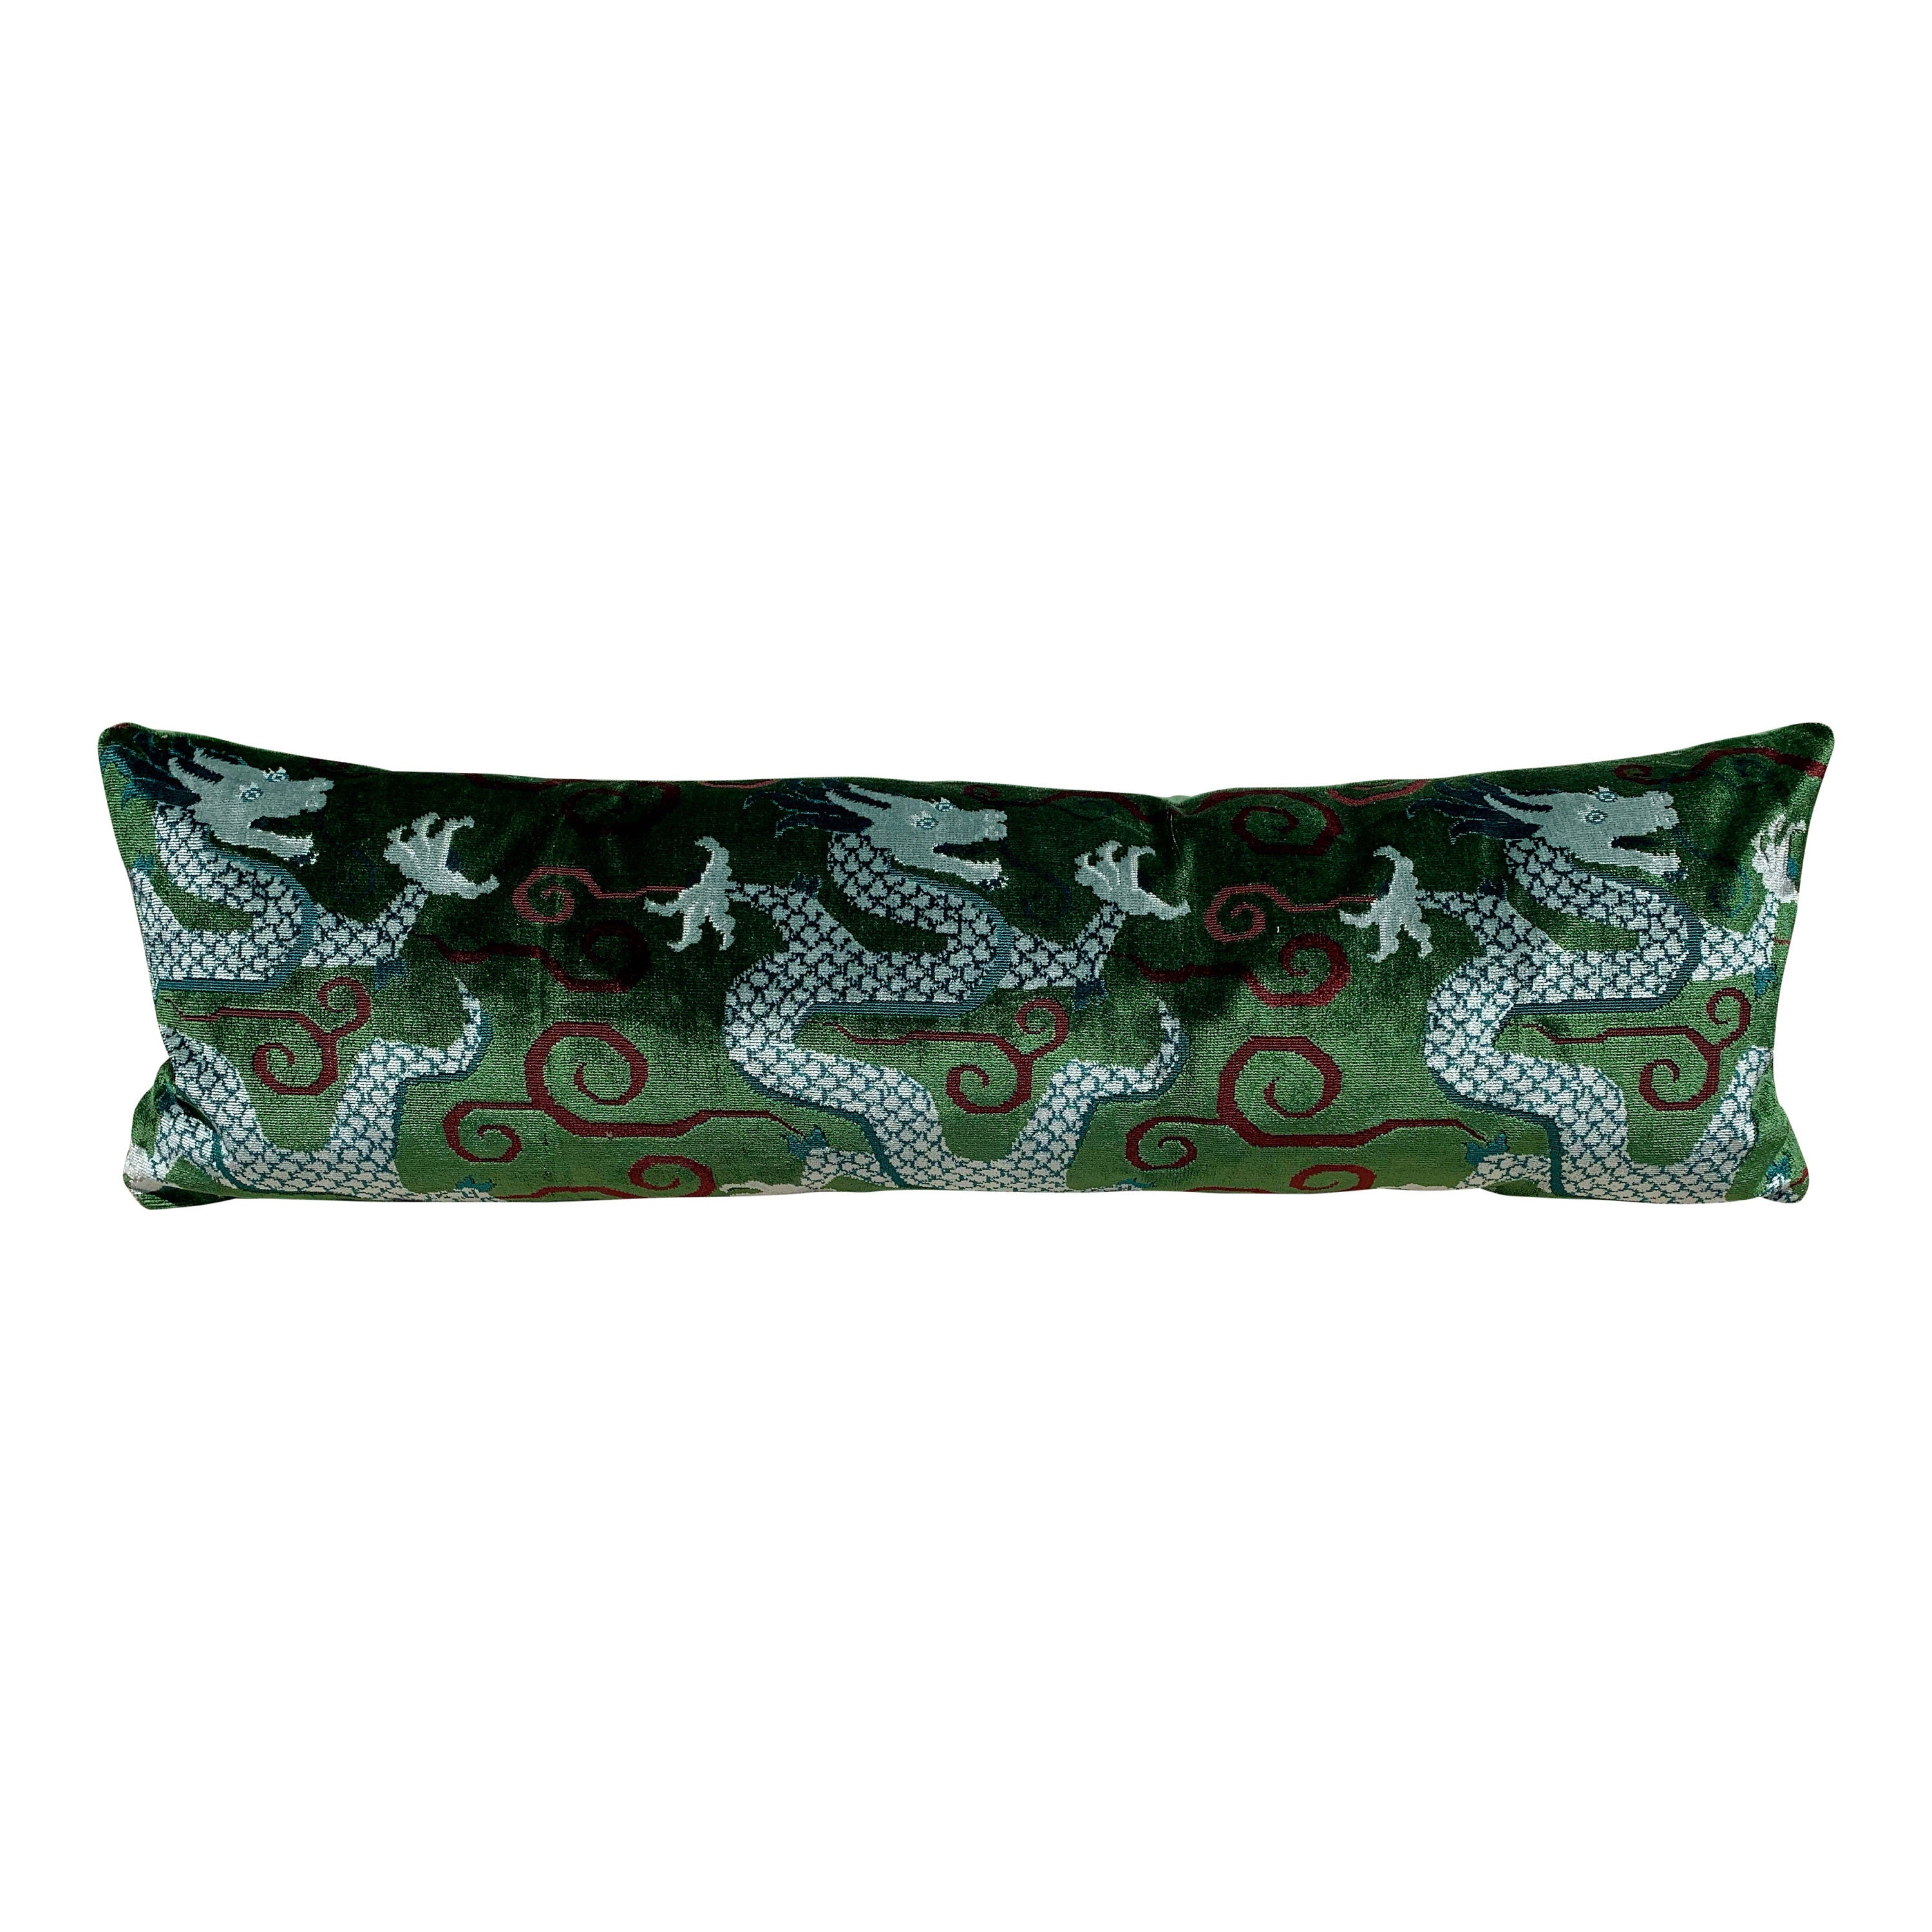 Schumacher Bixi Velvet Lumbar Pillow in Emerald Green. Dragon Velvet Pillow designer pillow cover high end cushion cover chinoiserie pillow